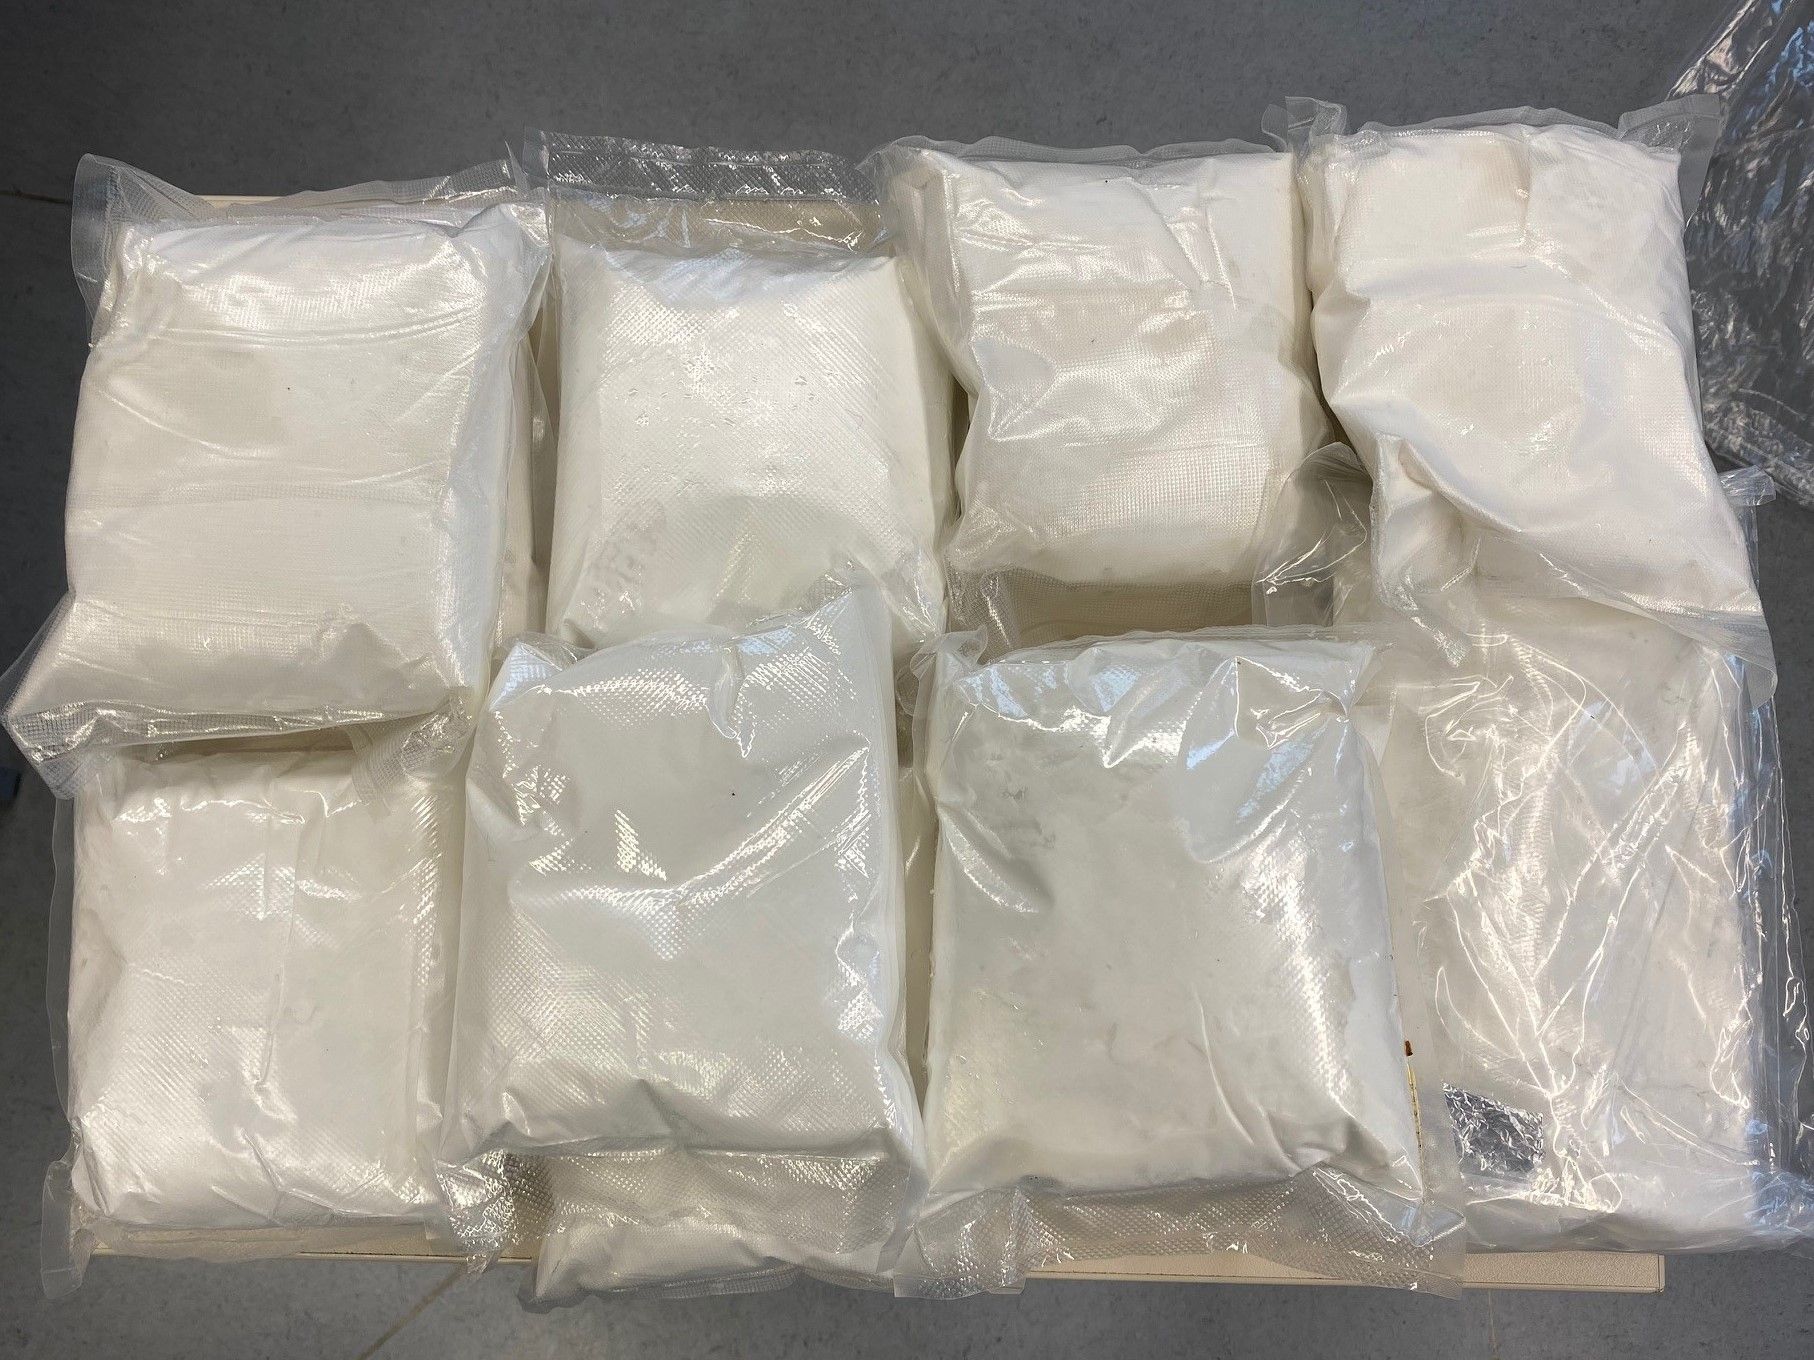 Baden-Württemberg: 11kg Amphetamin sichergestellt